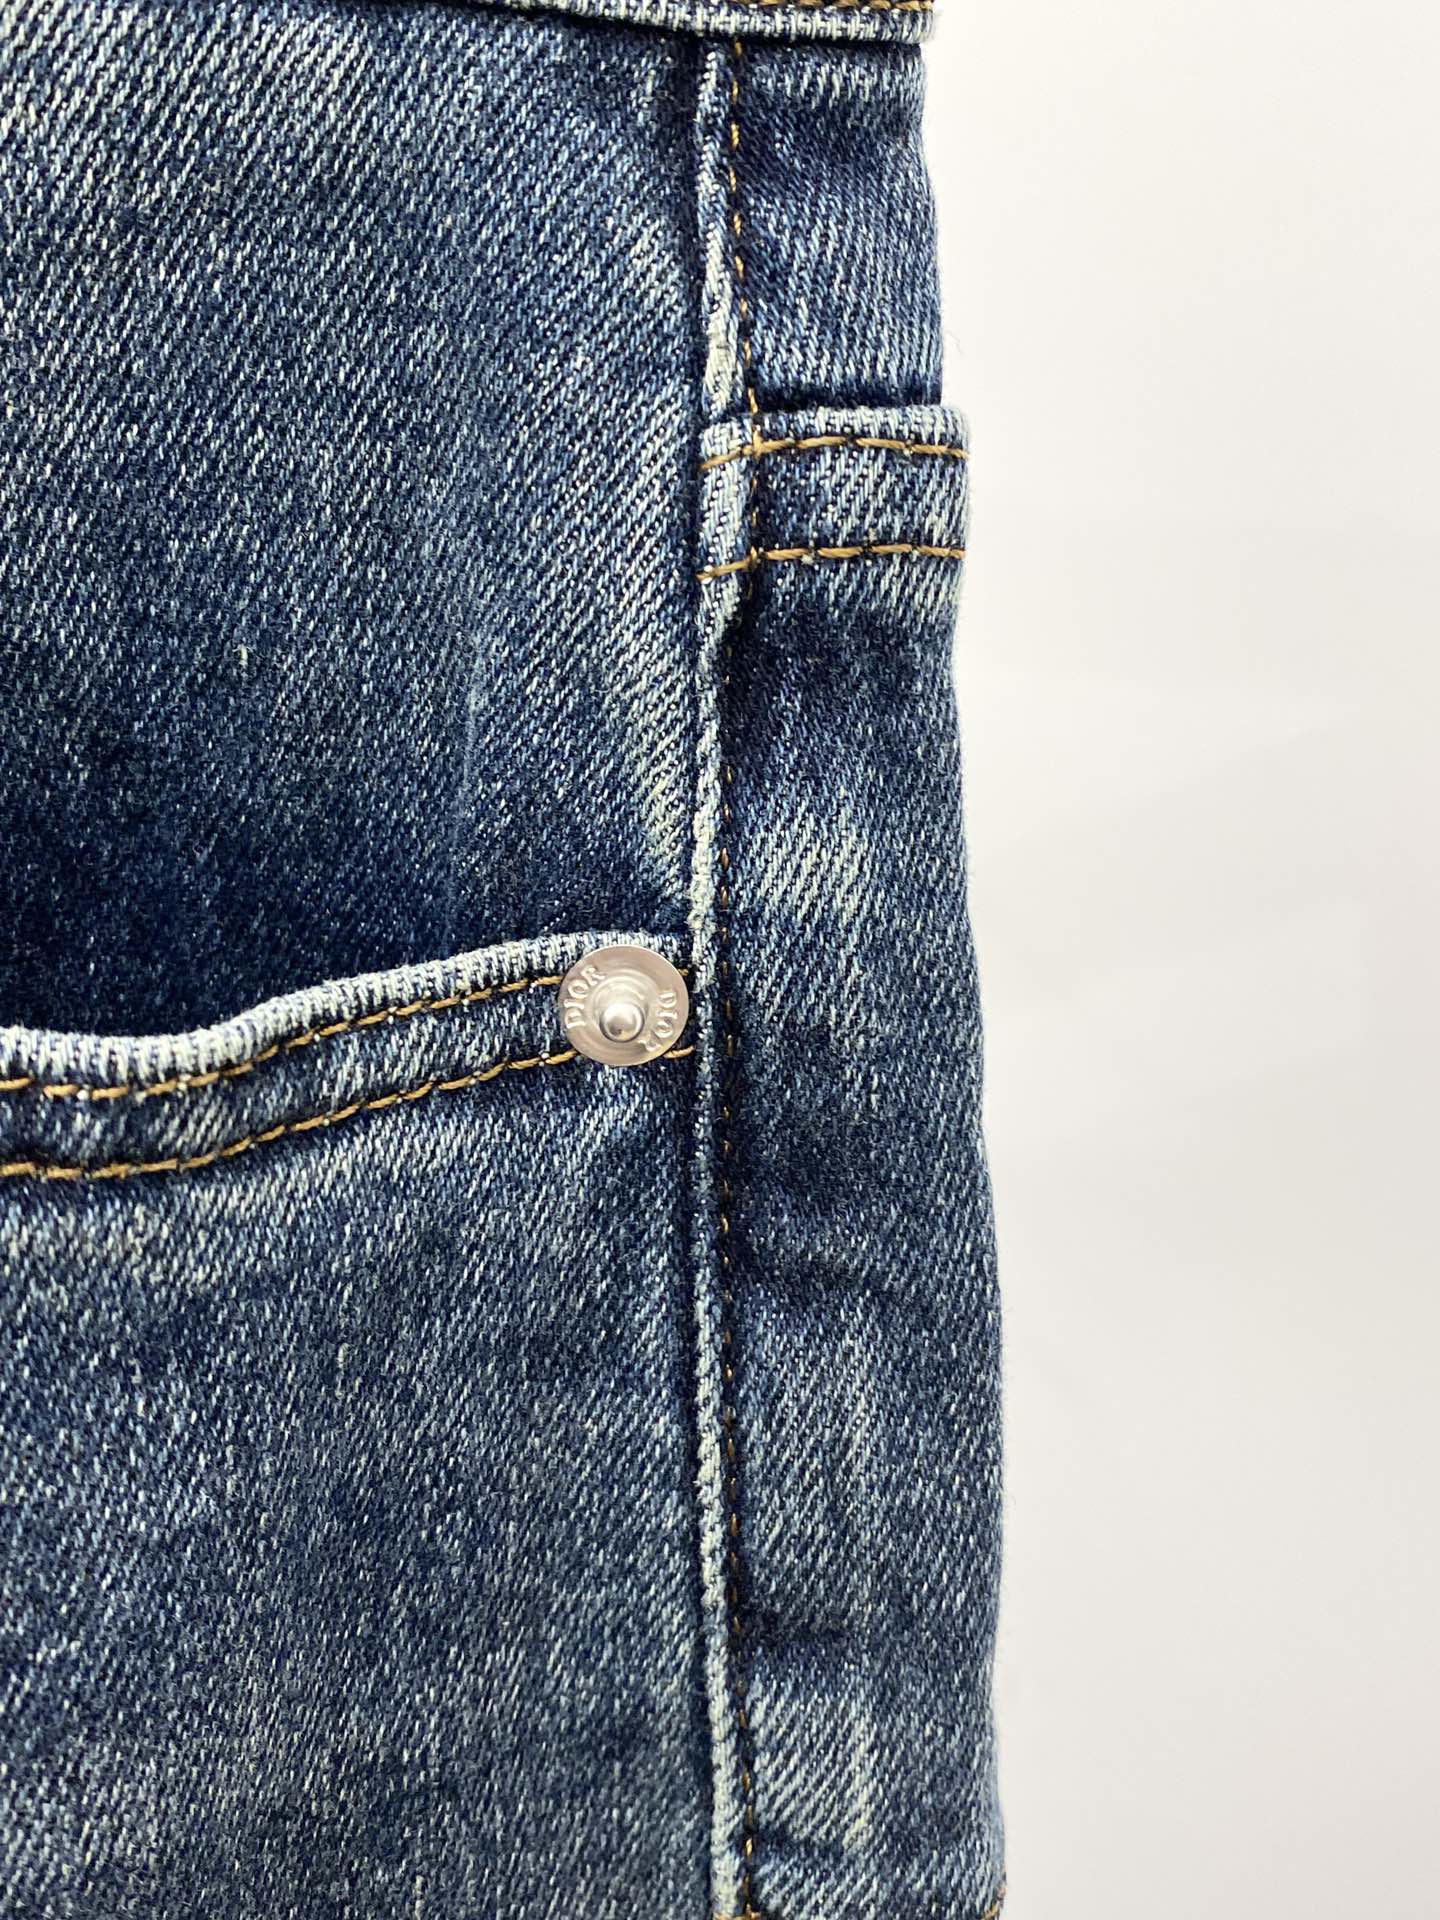 モード ズボンスーパーコピーデニム ジーンズ パンツ 柔らかい 弾性がいい 品質保証 美脚 シンプル ブルー_5